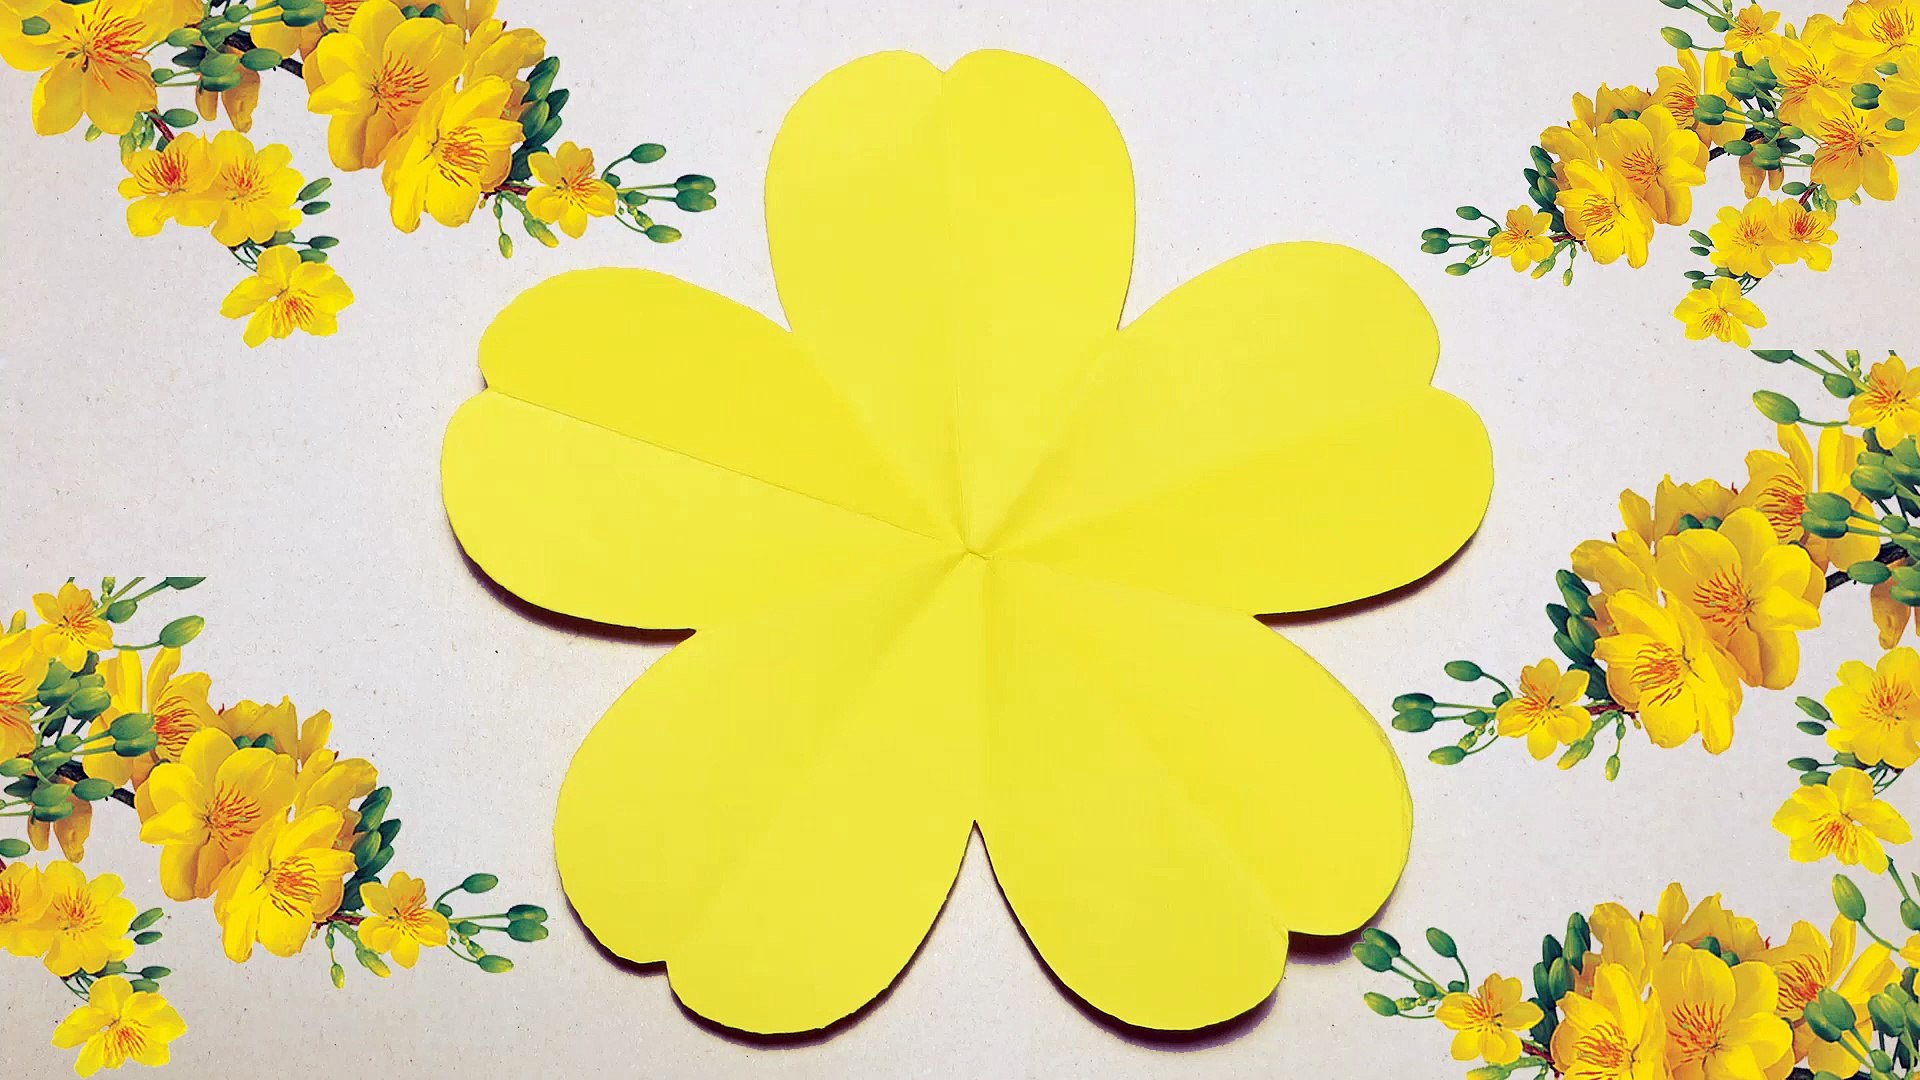 Cách gấp hoa đơn giản và dễ dàng cùng với những hướng dẫn chi tiết trong video. Màu sắc và hình dáng cực kỳ đẹp mắt, đặc biệt là loại hoa 5 cánh màu vàng đơn giản, rất phù hợp để làm quà tặng hoặc trang trí nhà cửa.